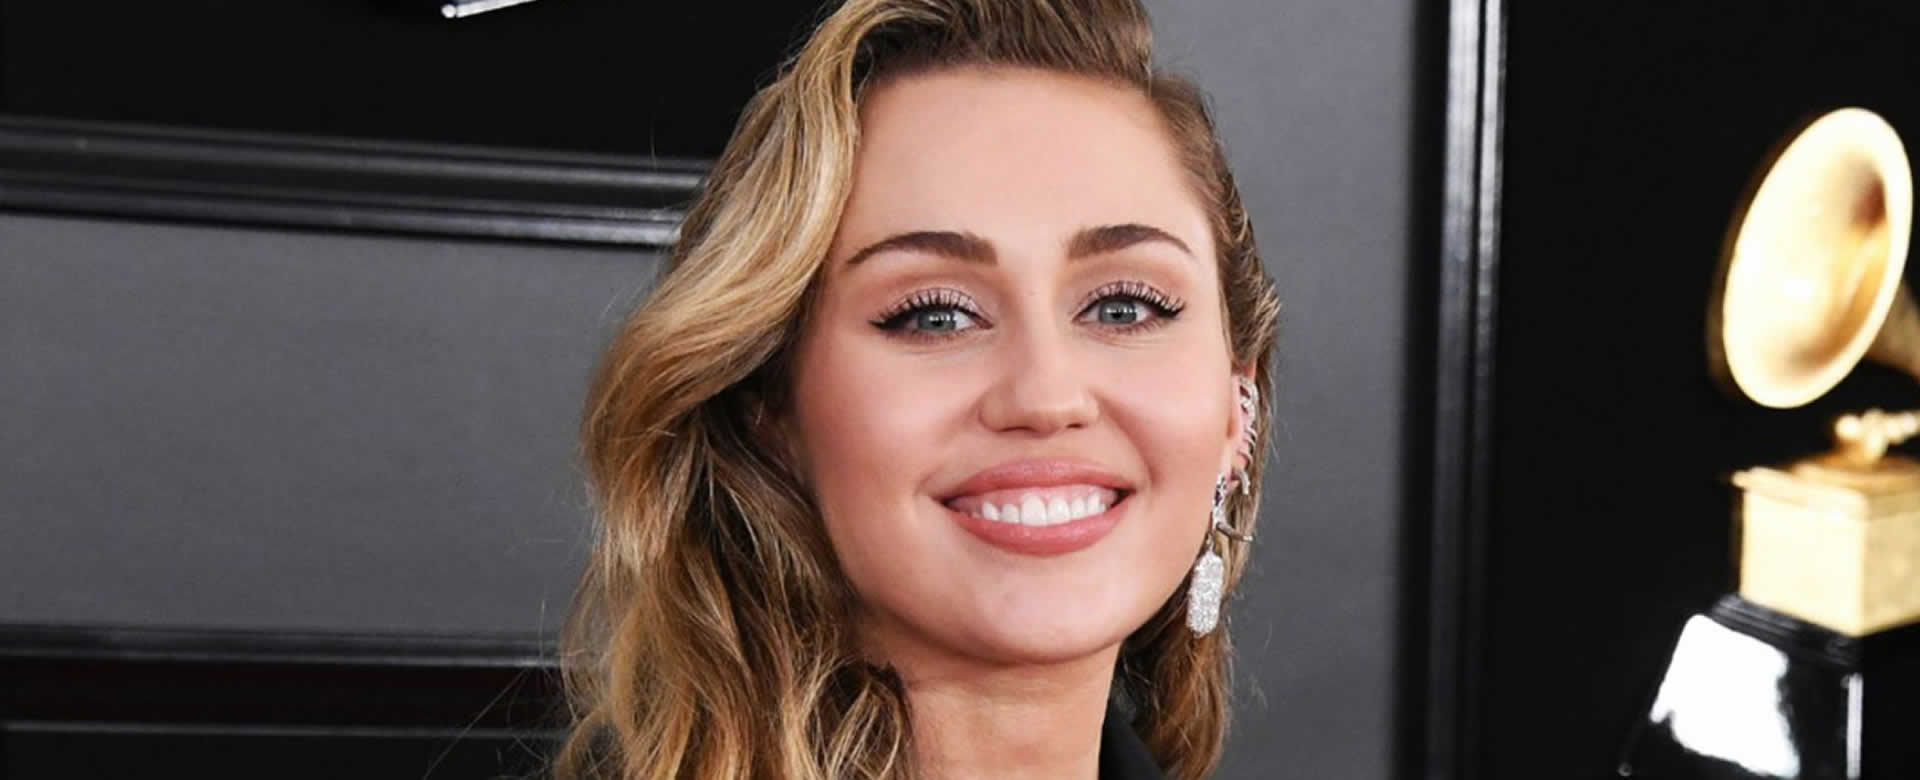 Miley Cyrus regresa a las pantallas con un videoclip al estilo de los 80's